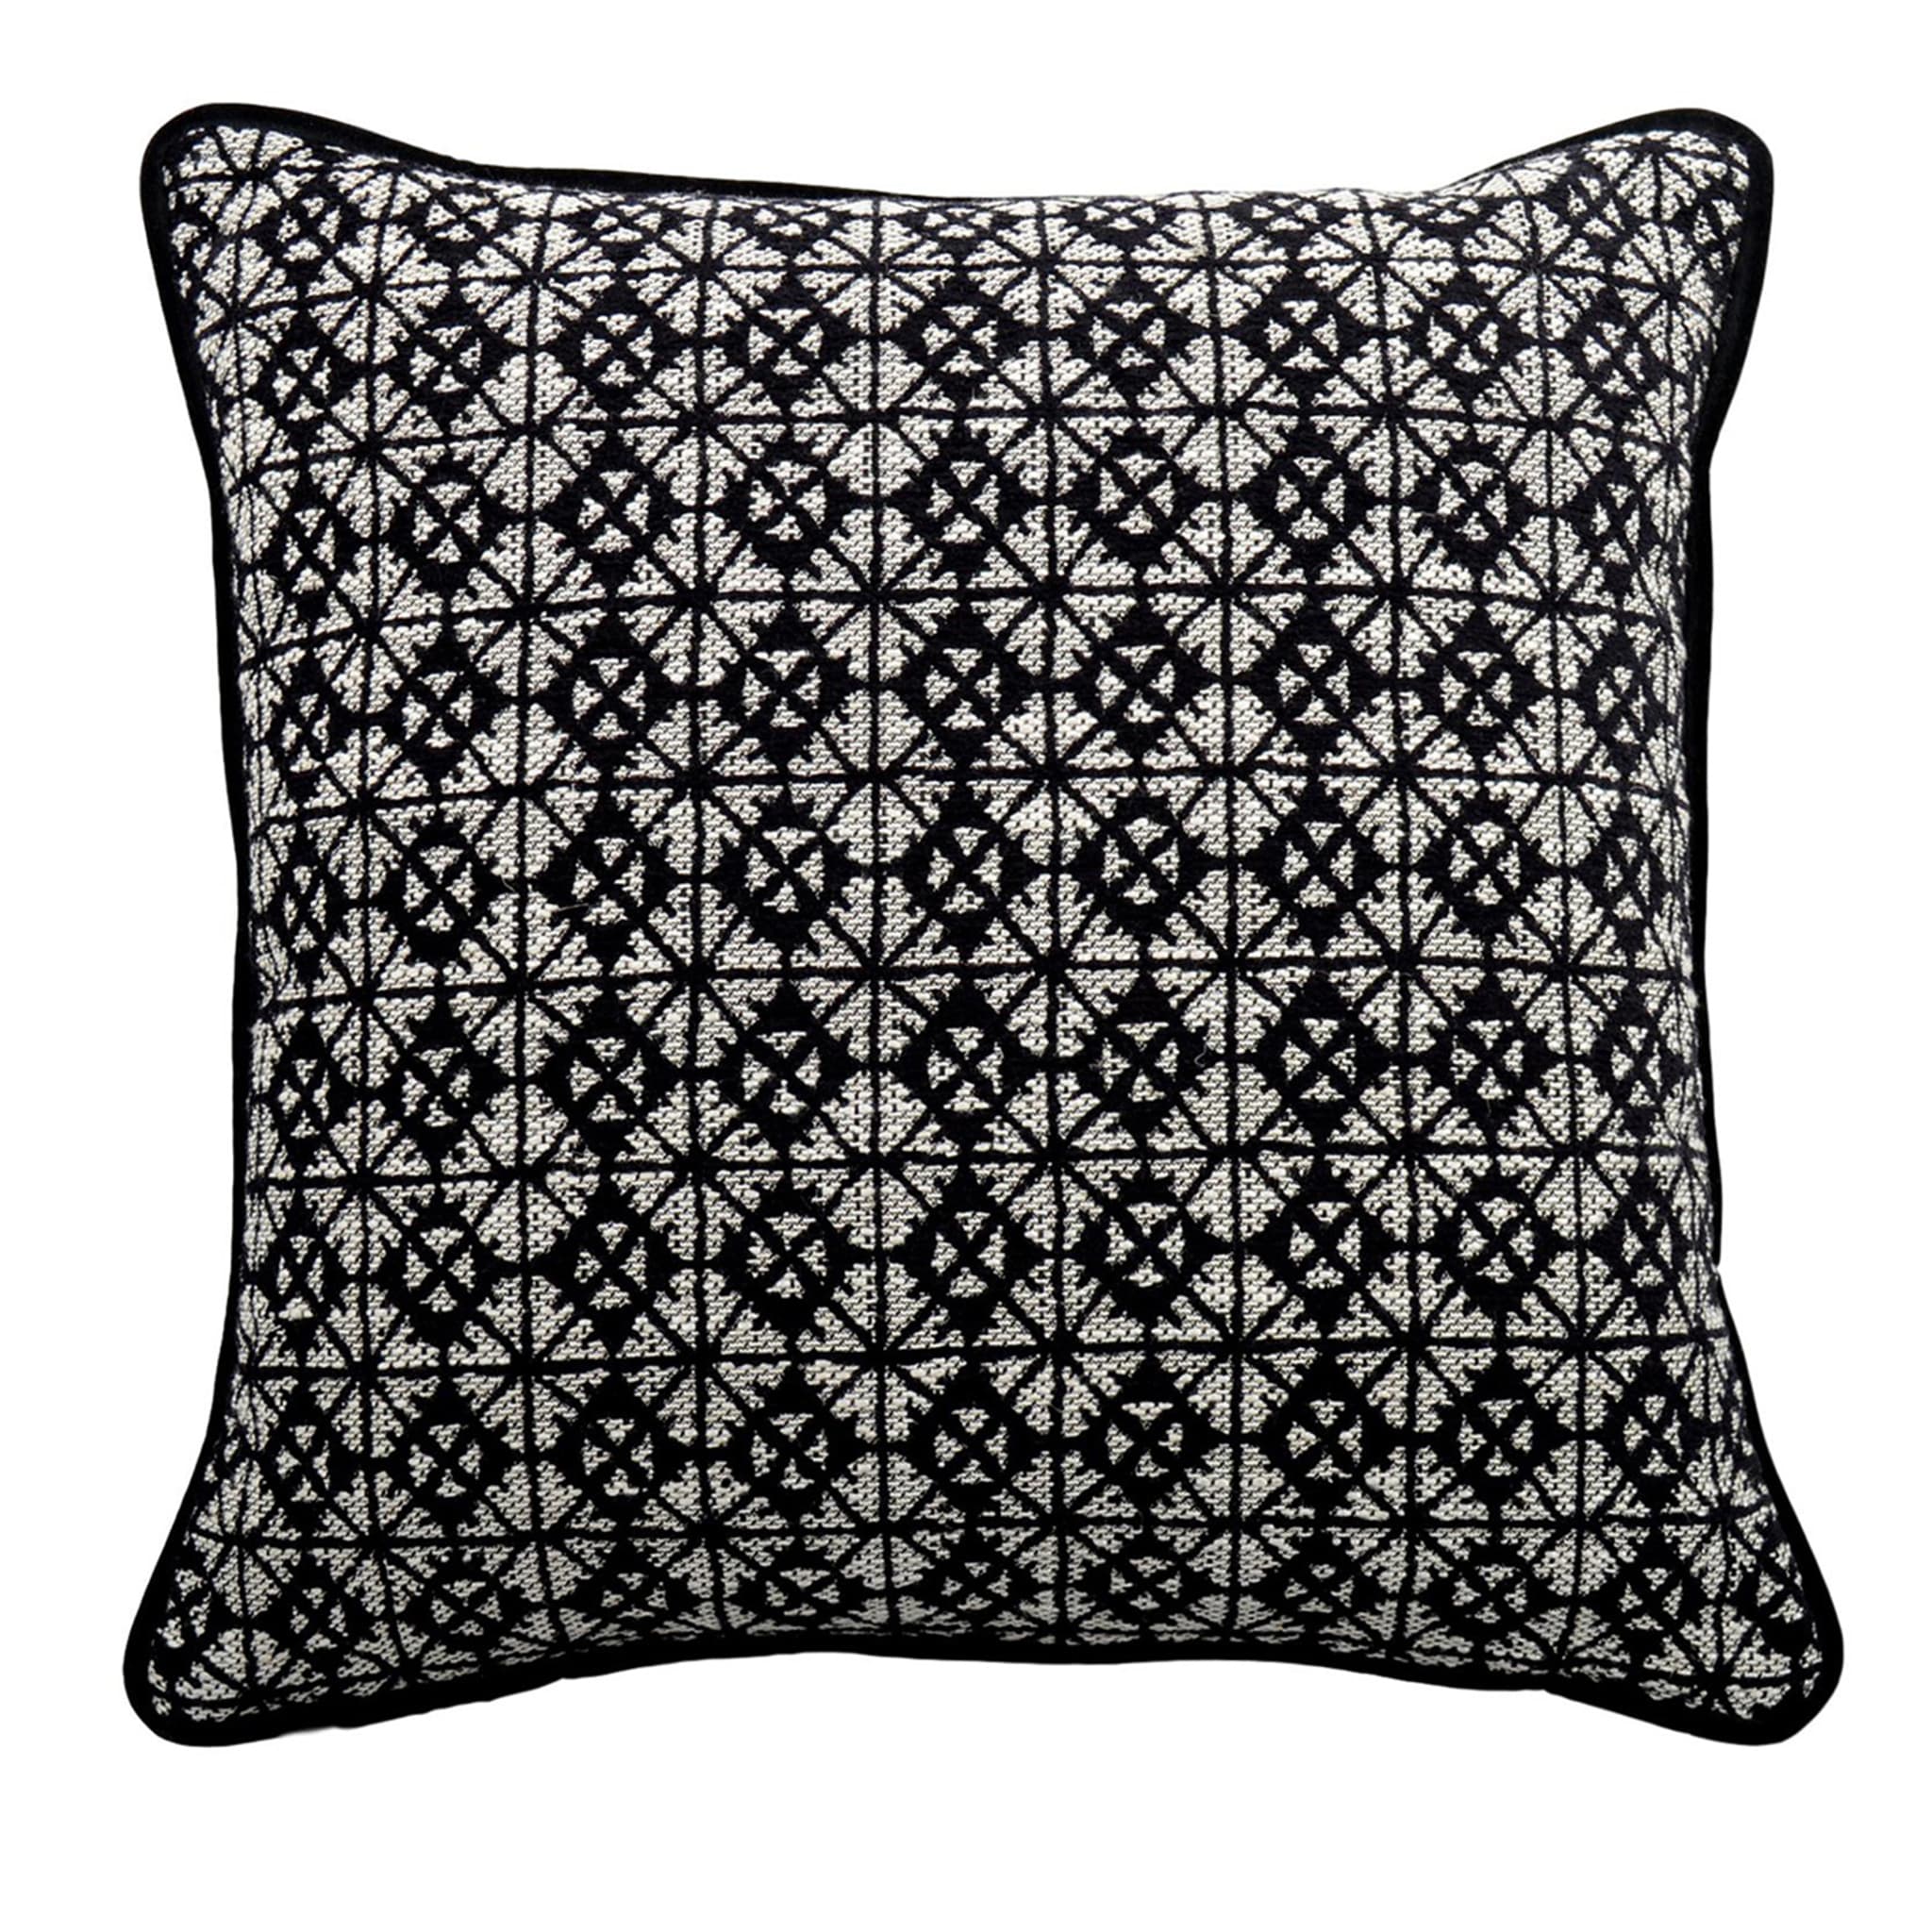 Cuscino Carrè bianco e nero in tessuto jacquard geometrico - Vista principale